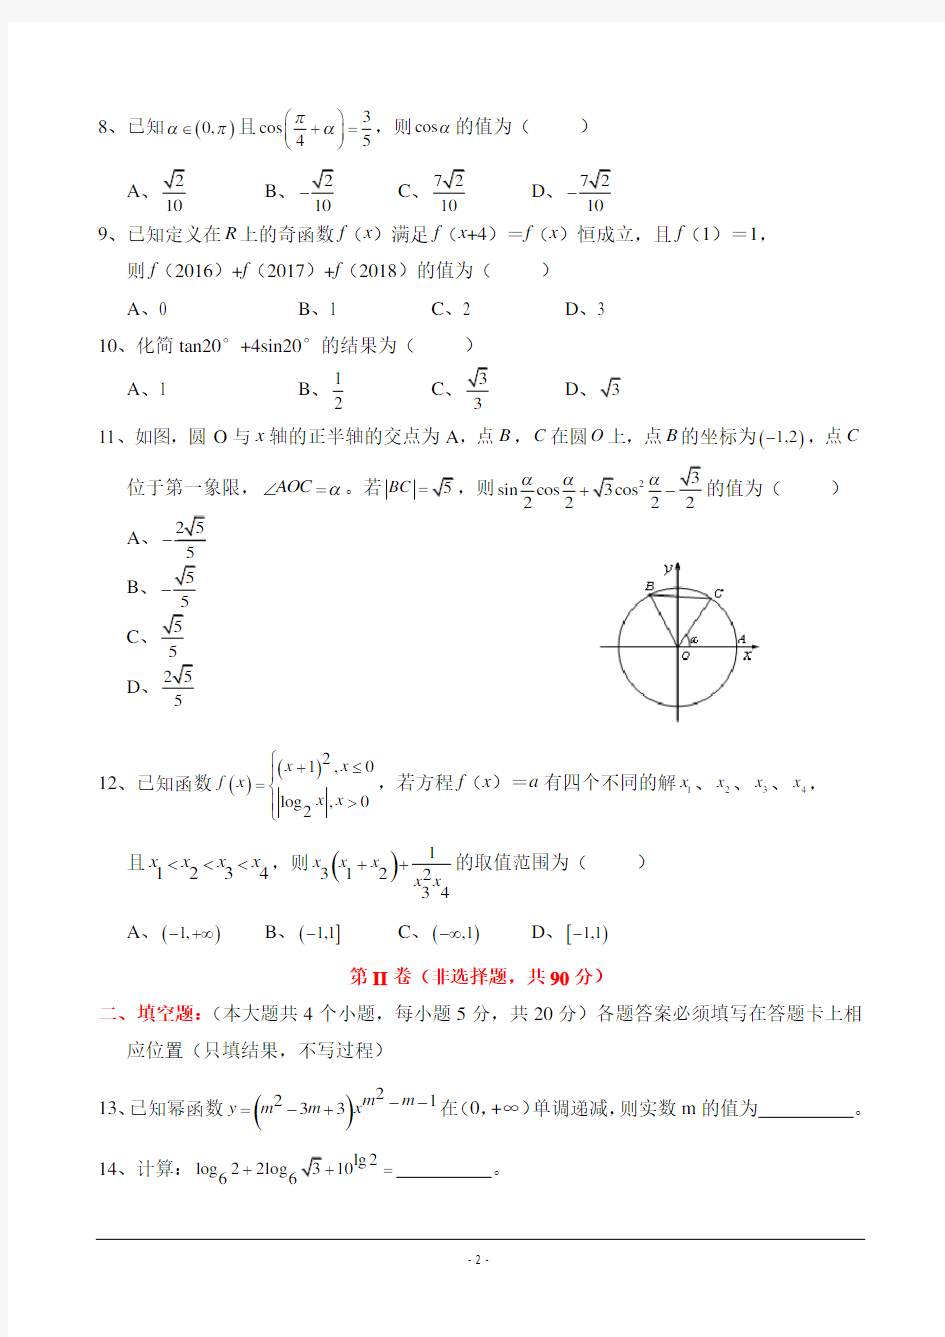 (完整版)重庆南开中学高2018级高一(上)期末数学考试及答案